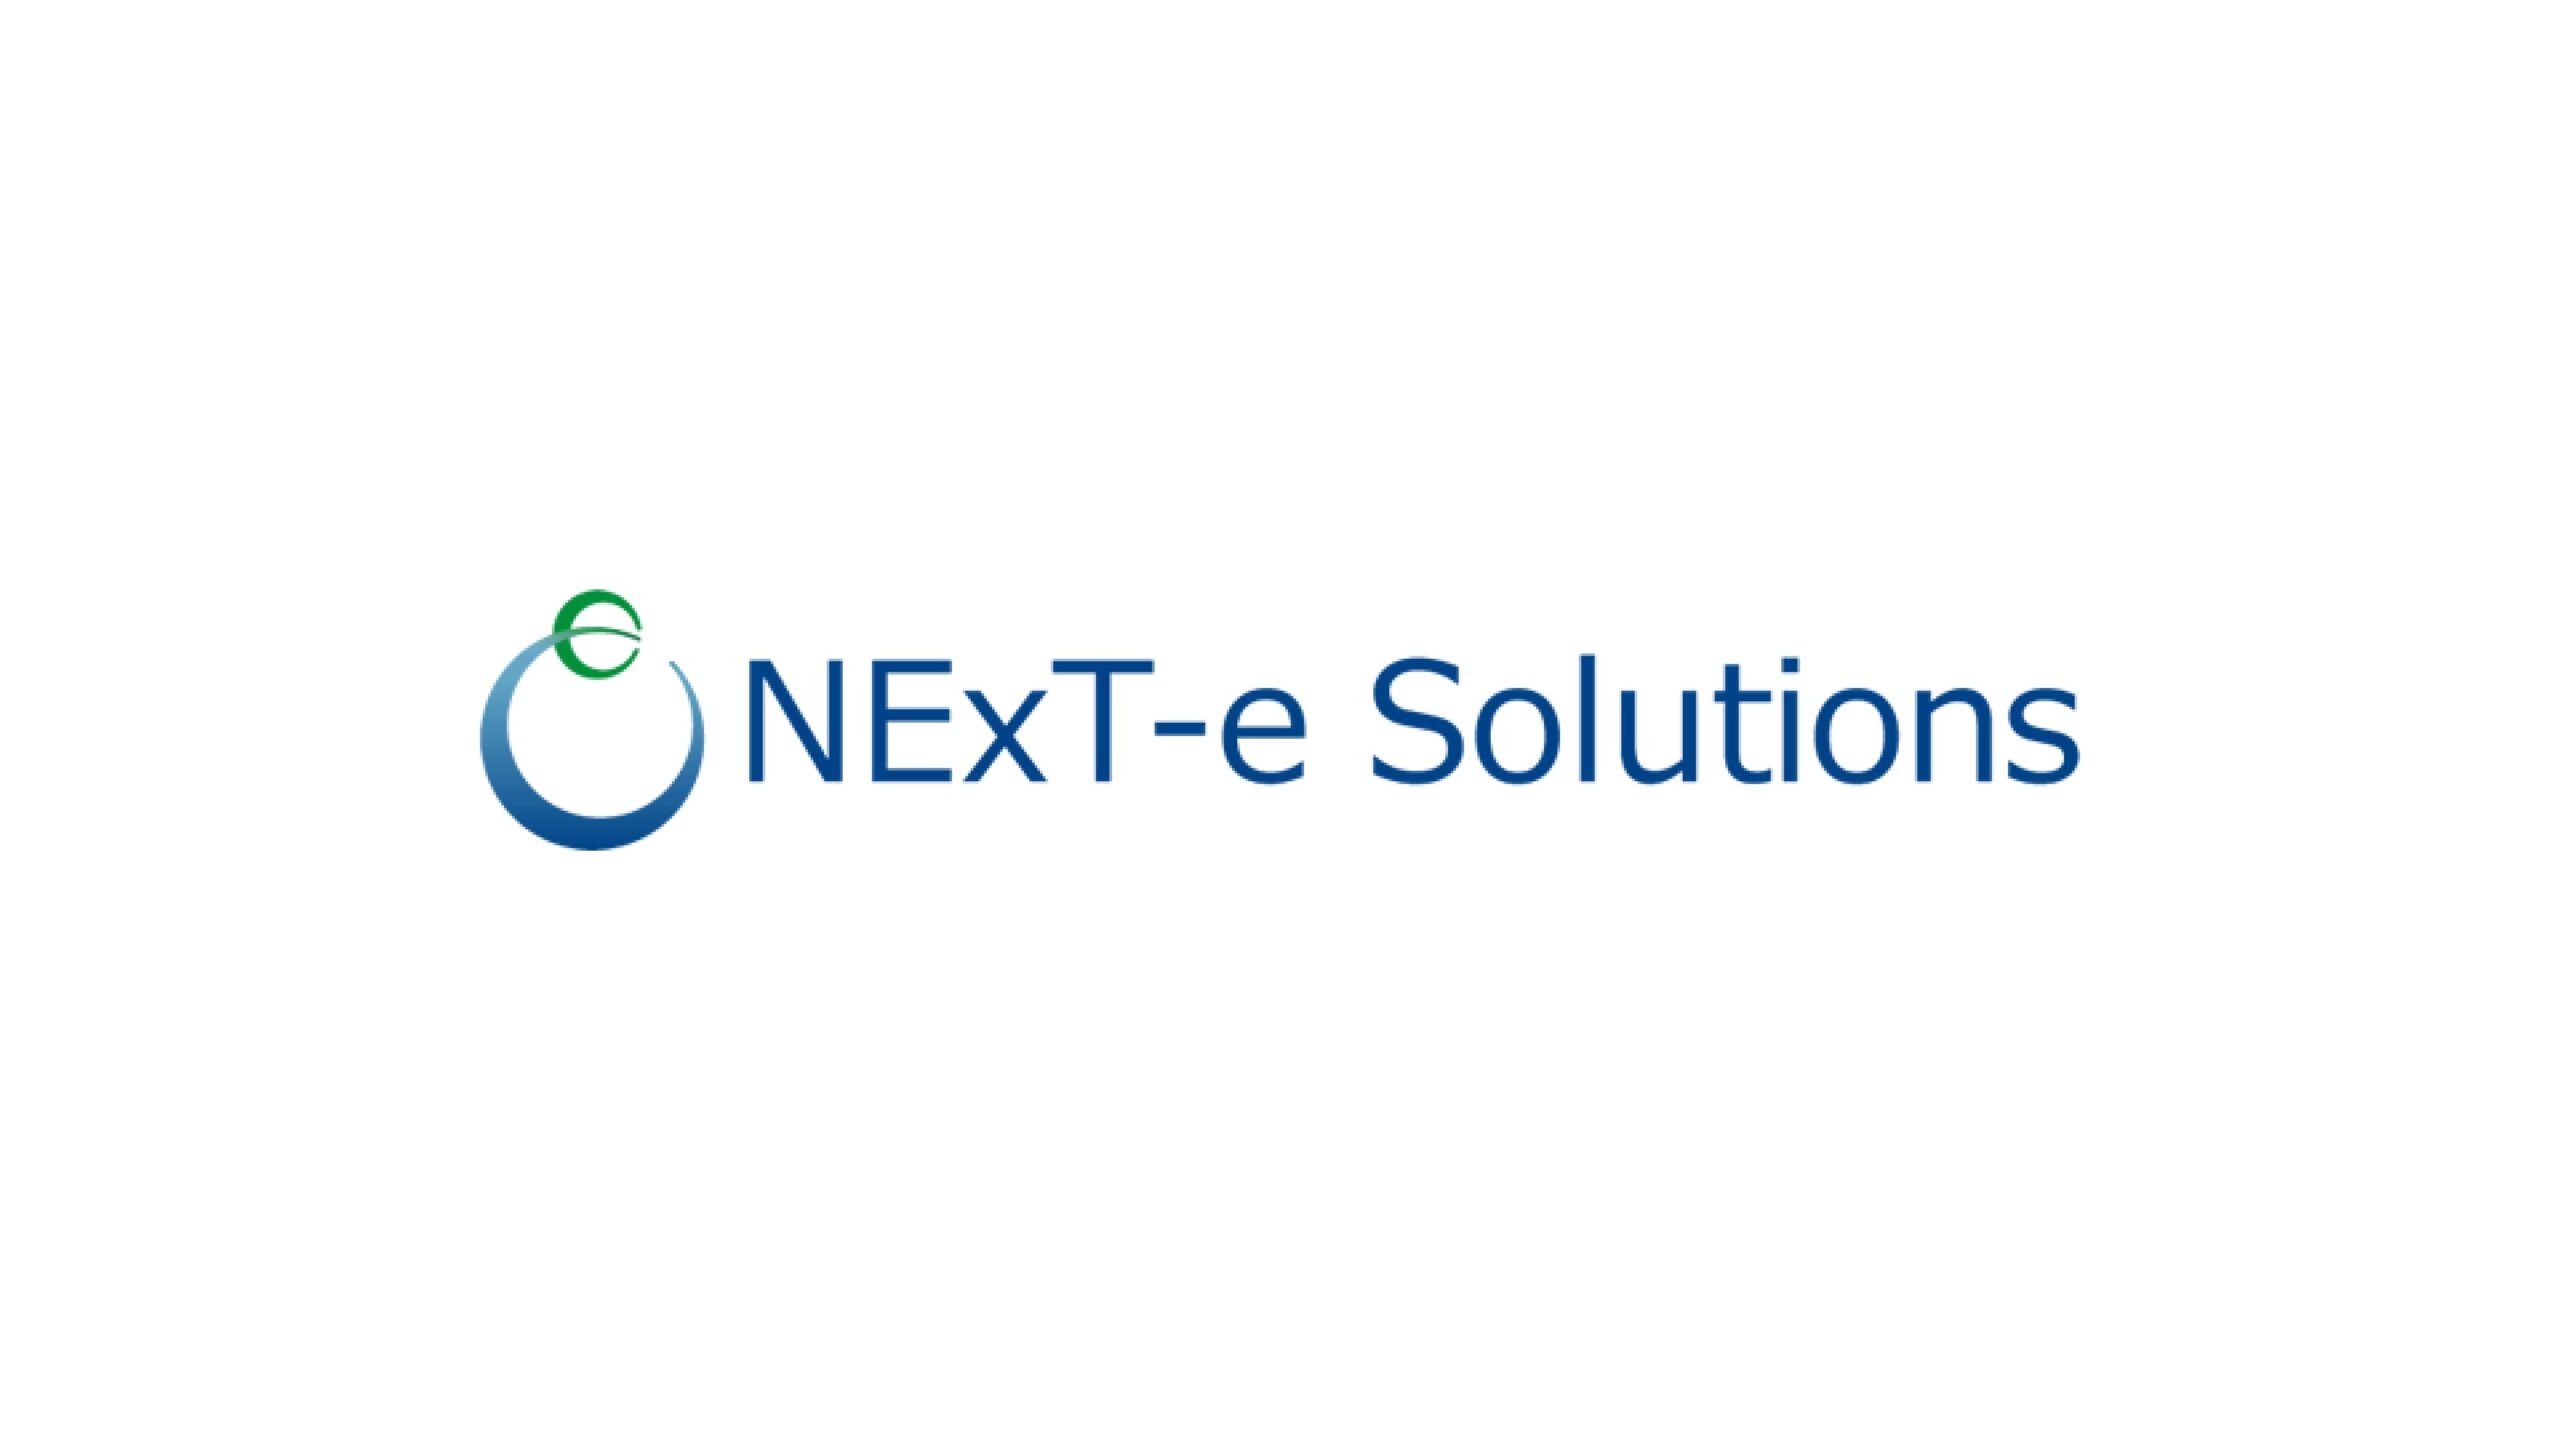 蓄電池システムのバッテリーシステムを開発するNExT-e Solutions 株式会社が株式会社東海理化より資金調達